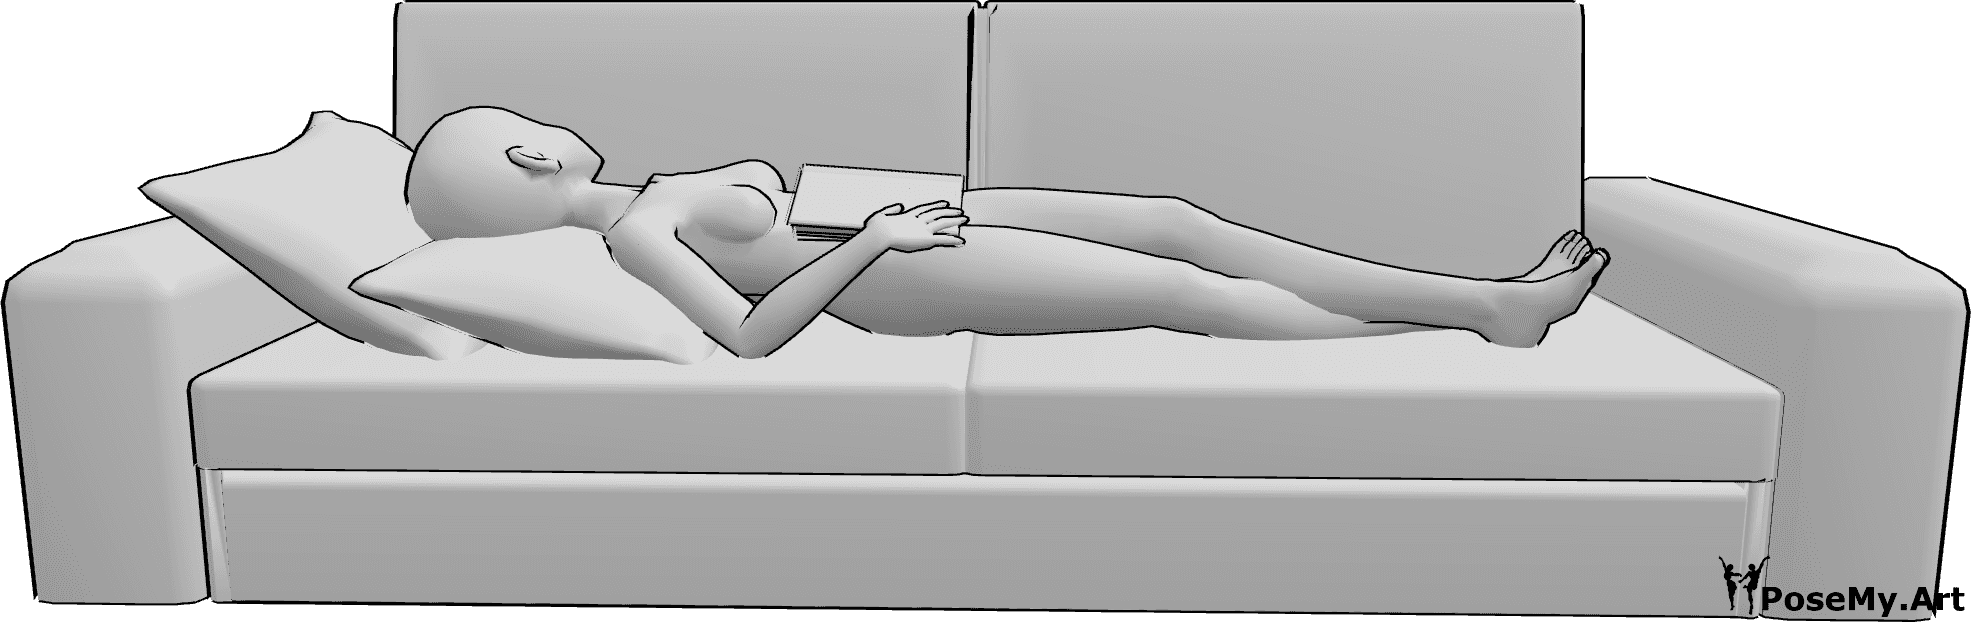 Referência de poses- Pose de sono de leitura de anime - A mulher anime está deitada de costas no sofá e segura um livro enquanto dorme